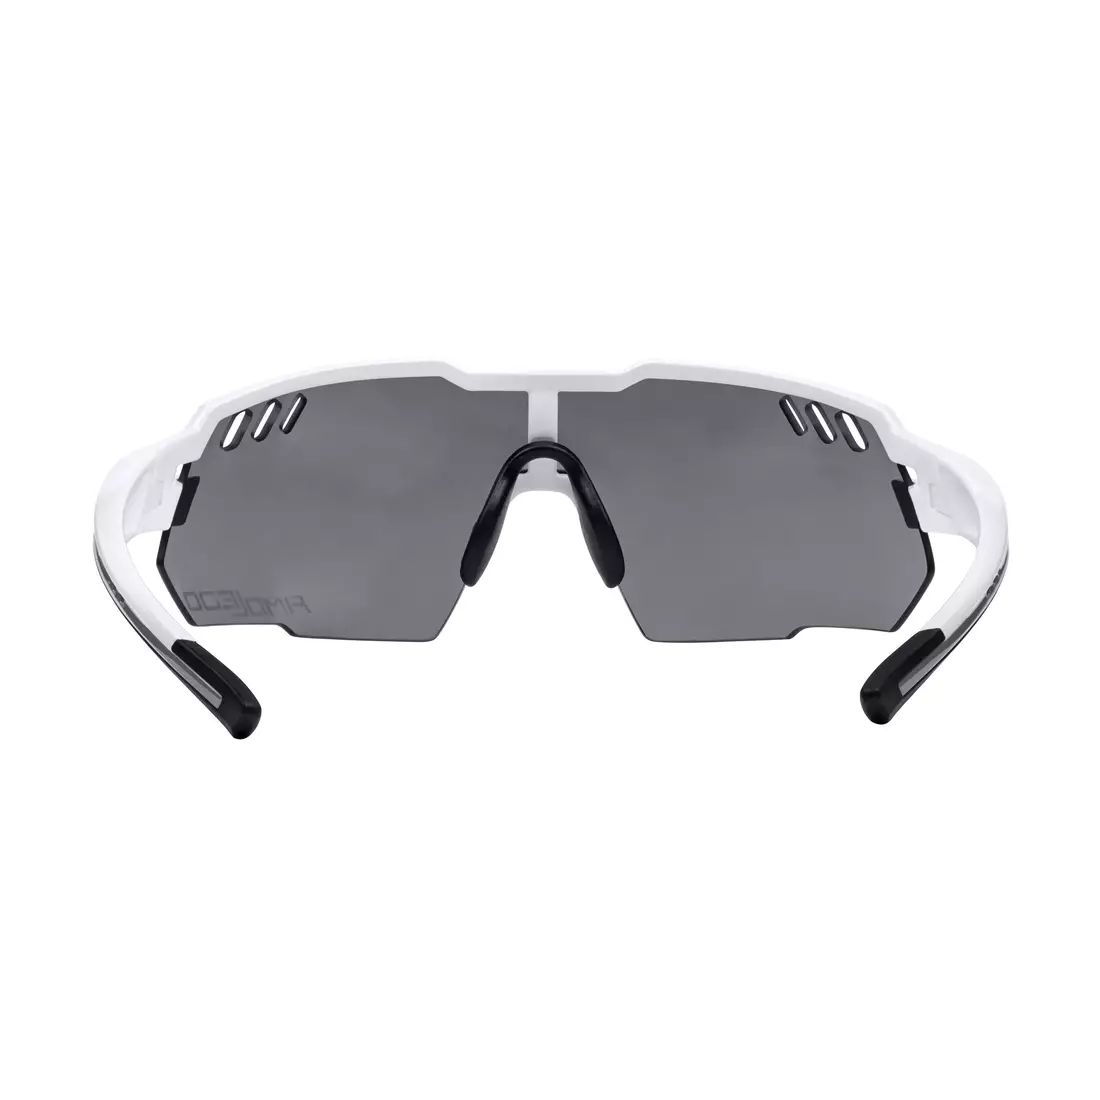 FORCE sportbrille AMOLEDO, weiß-grau 910871